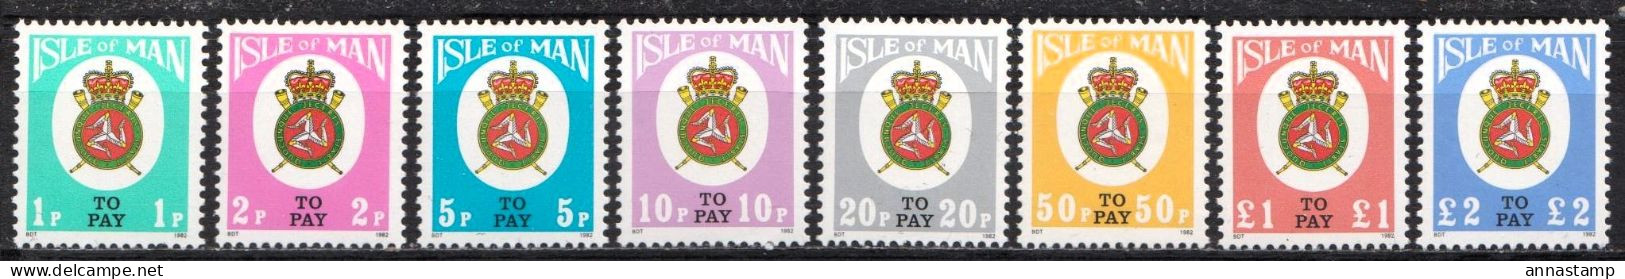 Isle Of Man MNH Set - Stamps